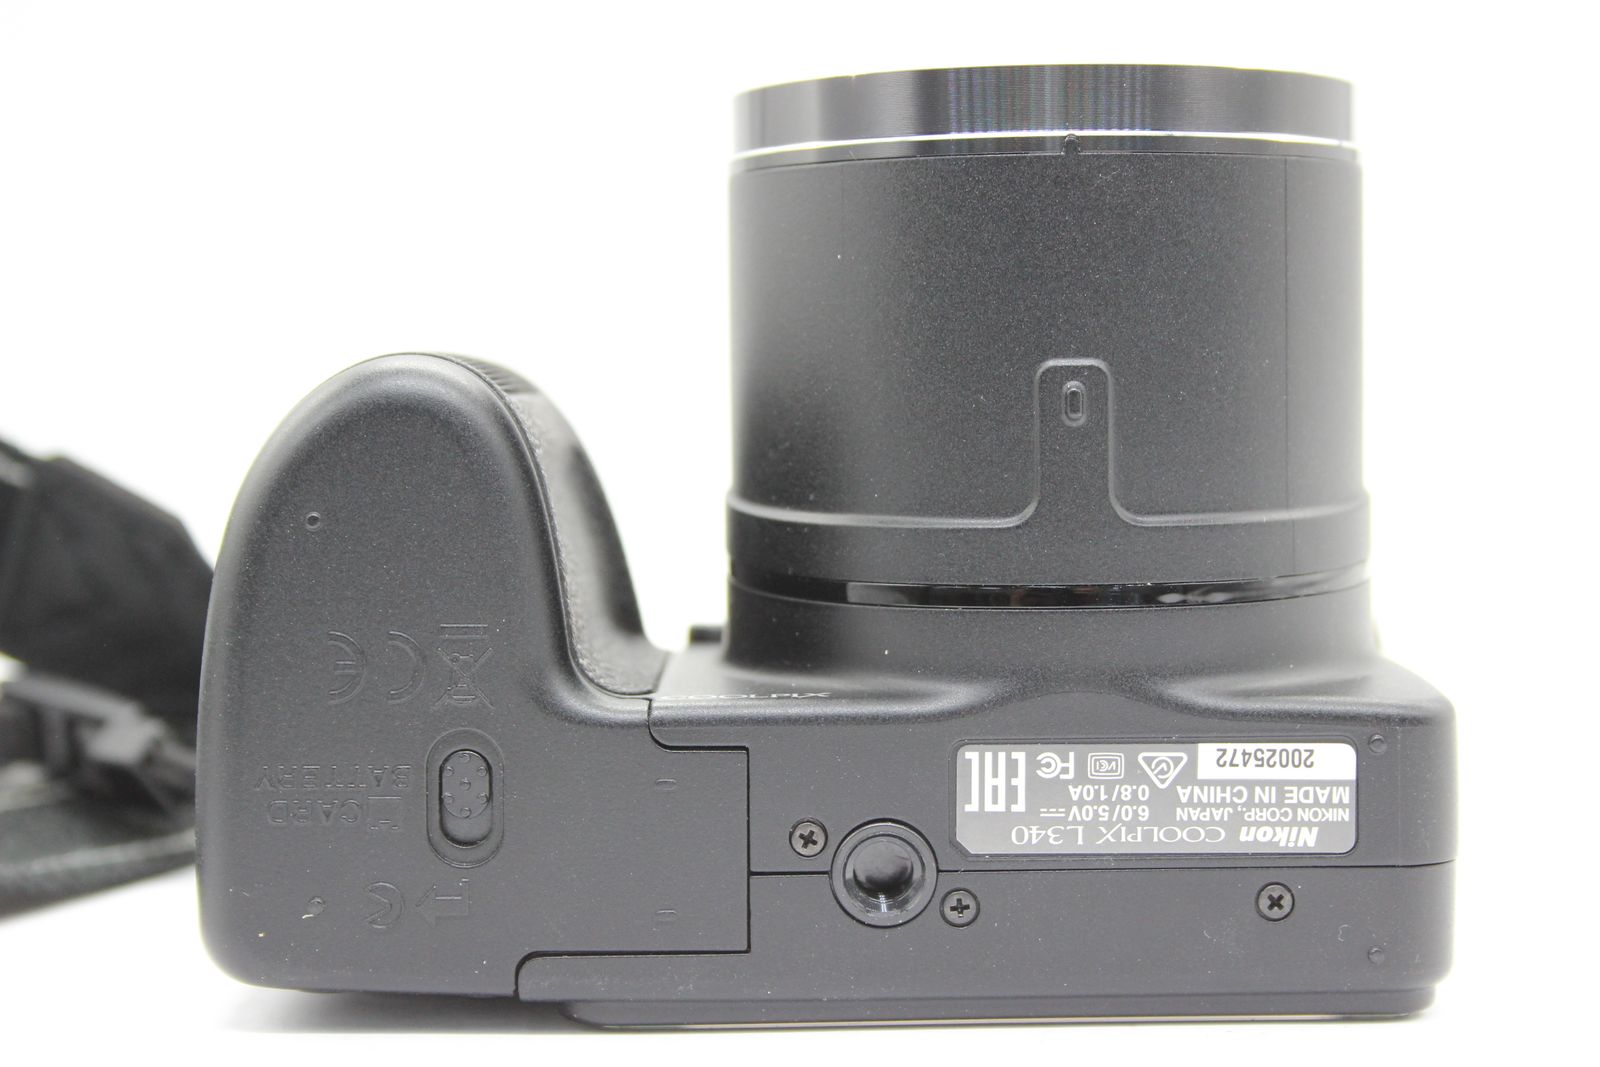 【返品保証】 【便利な単三電池で使用可】ニコン Nikon Coolpix L340 28x 元箱付き コンパクトデジタルカメラ s5733